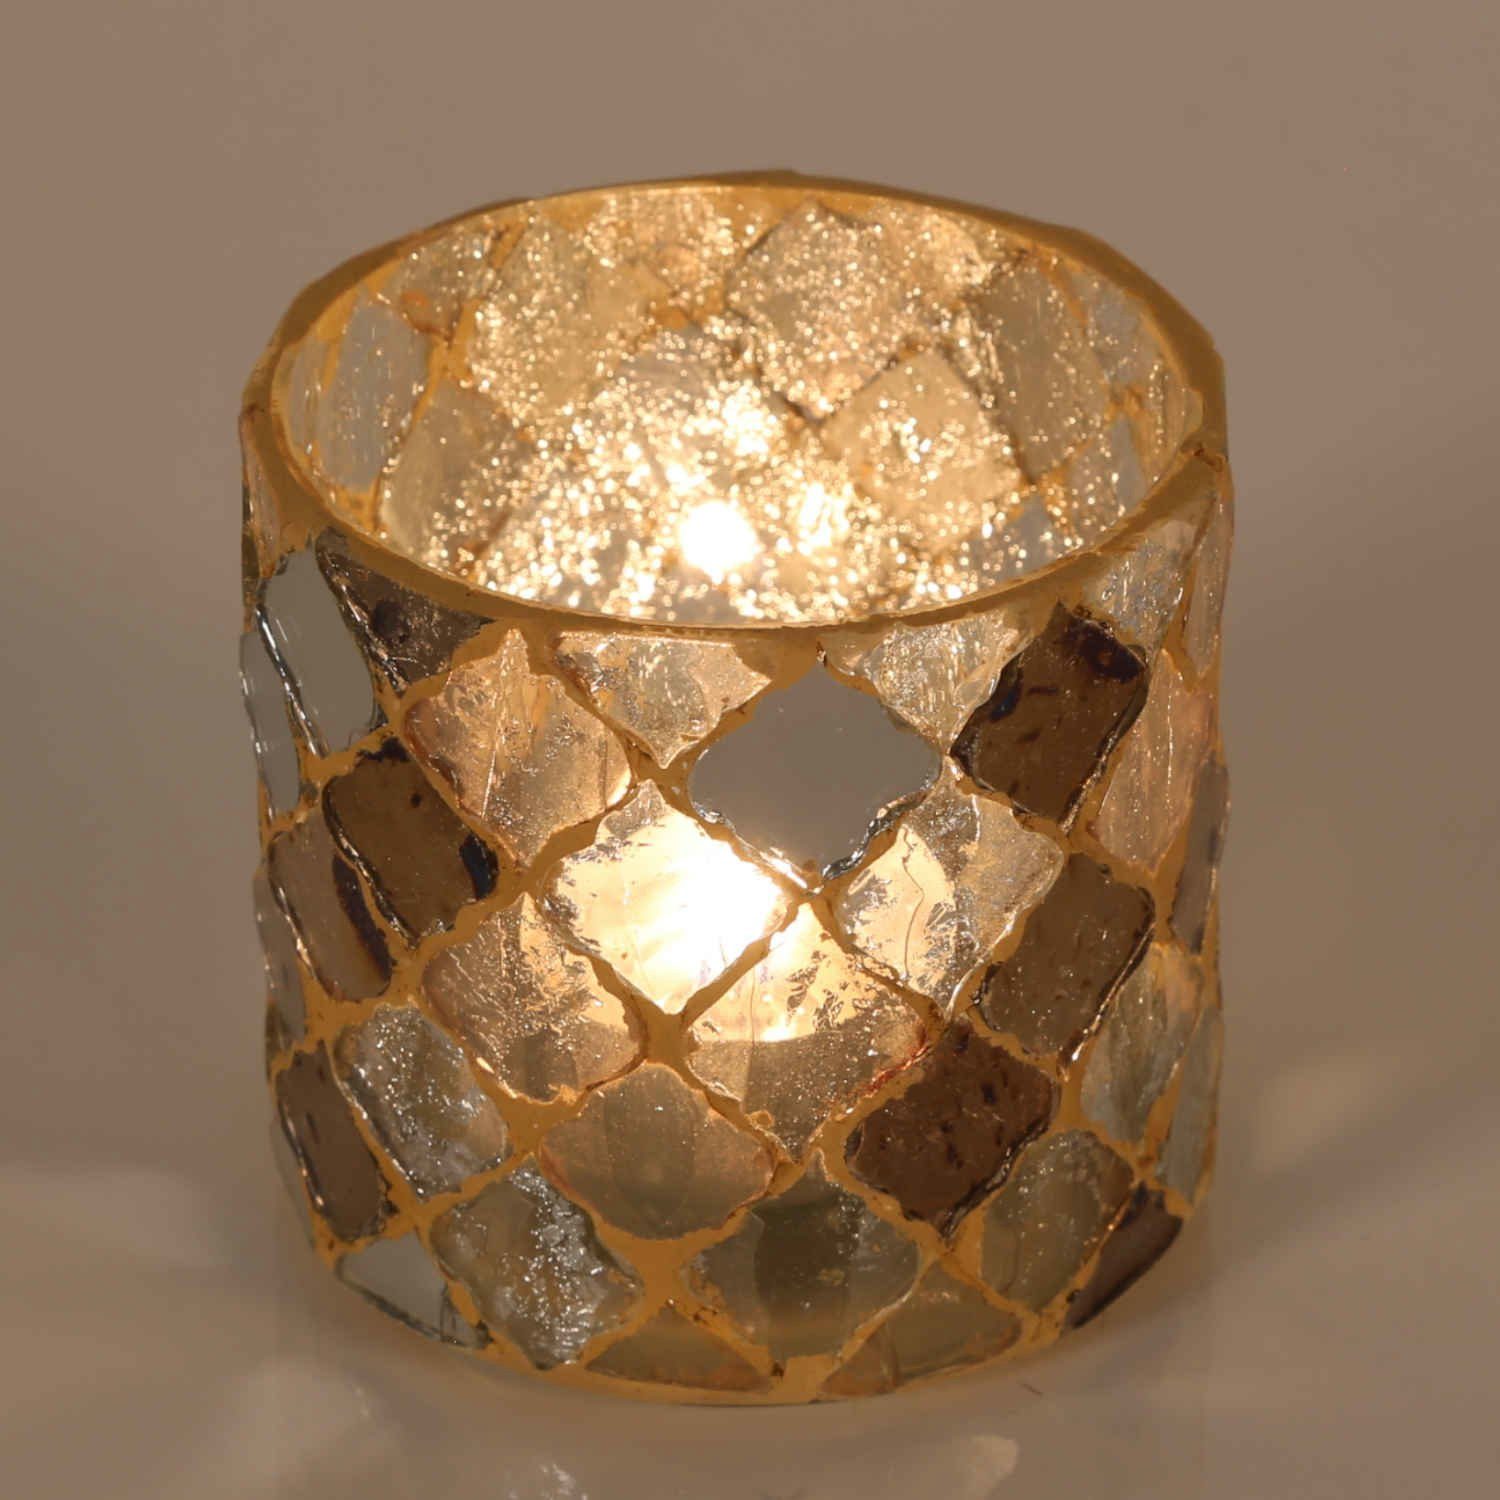 Casa Moro Windlicht Orientalisches Mosaik Windlicht Athen Gold rund aus Glas (Teelichthalter Boho Chic Kerzenständer Kerzenhalter, Glaswindlicht in den Größen S und M oder als 2er Set bestellbar), Ramadan Dekoration wie aus 1001 Nacht